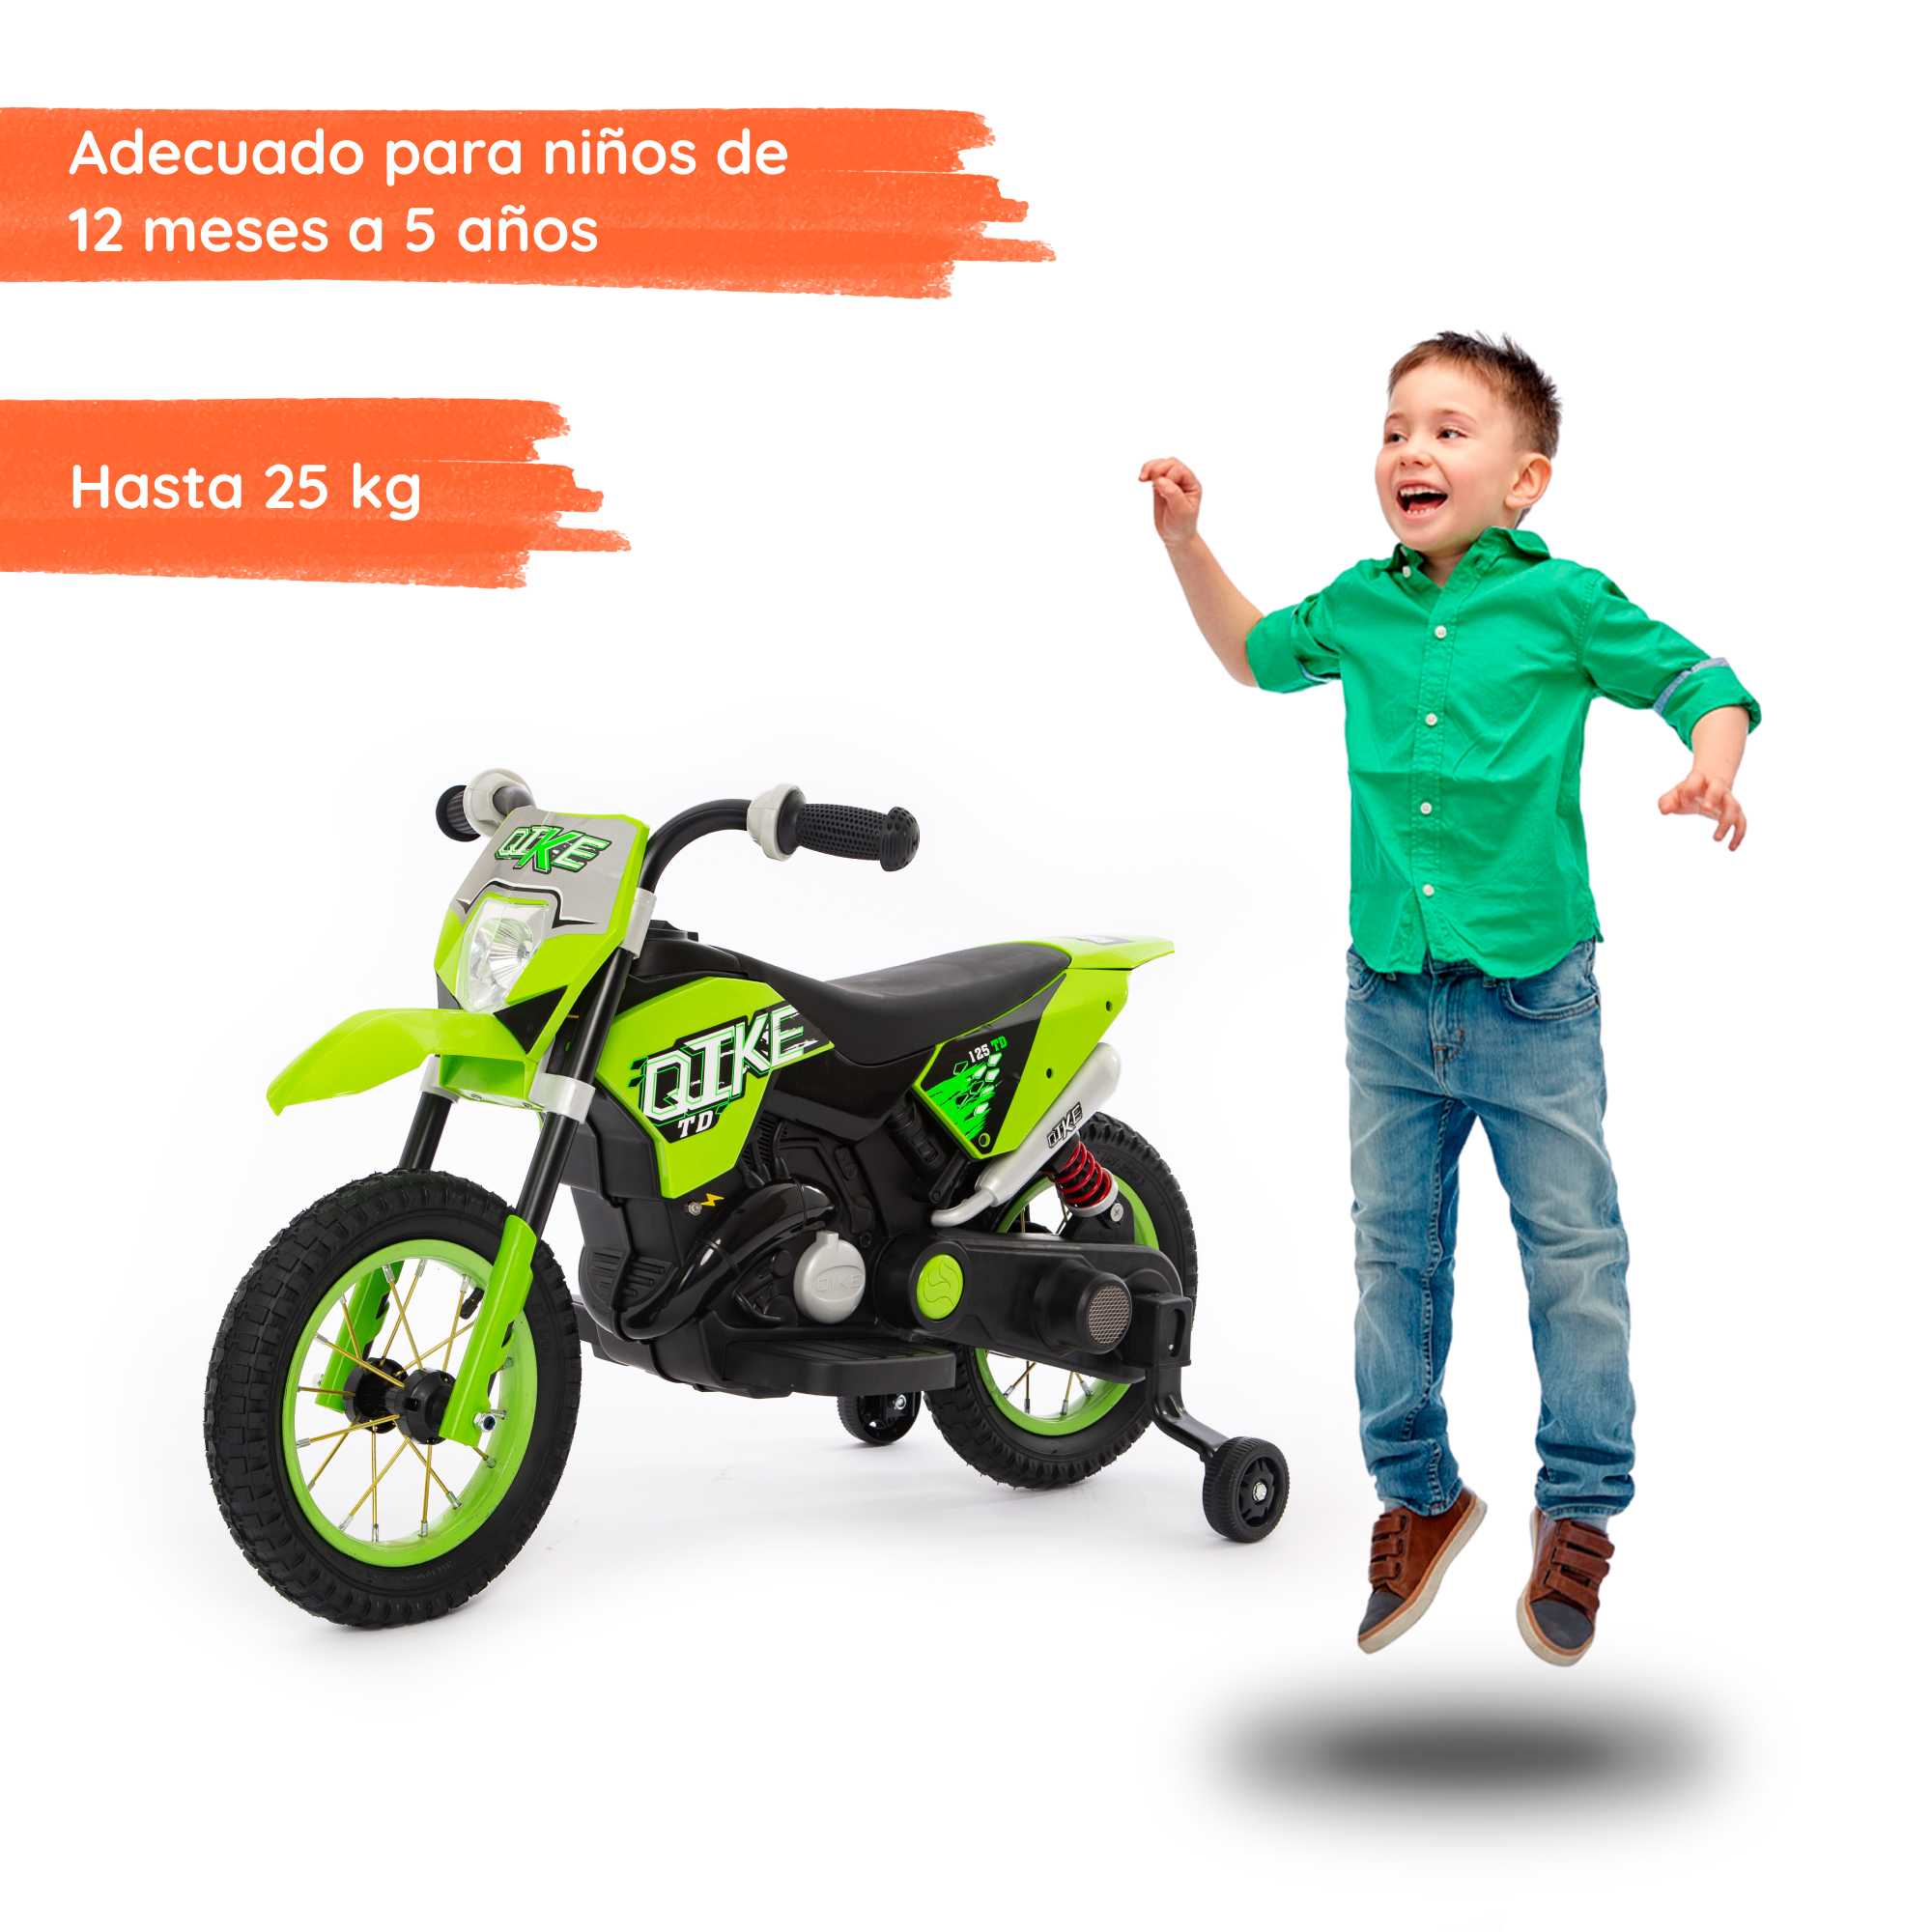 Moto Cross verde con niño